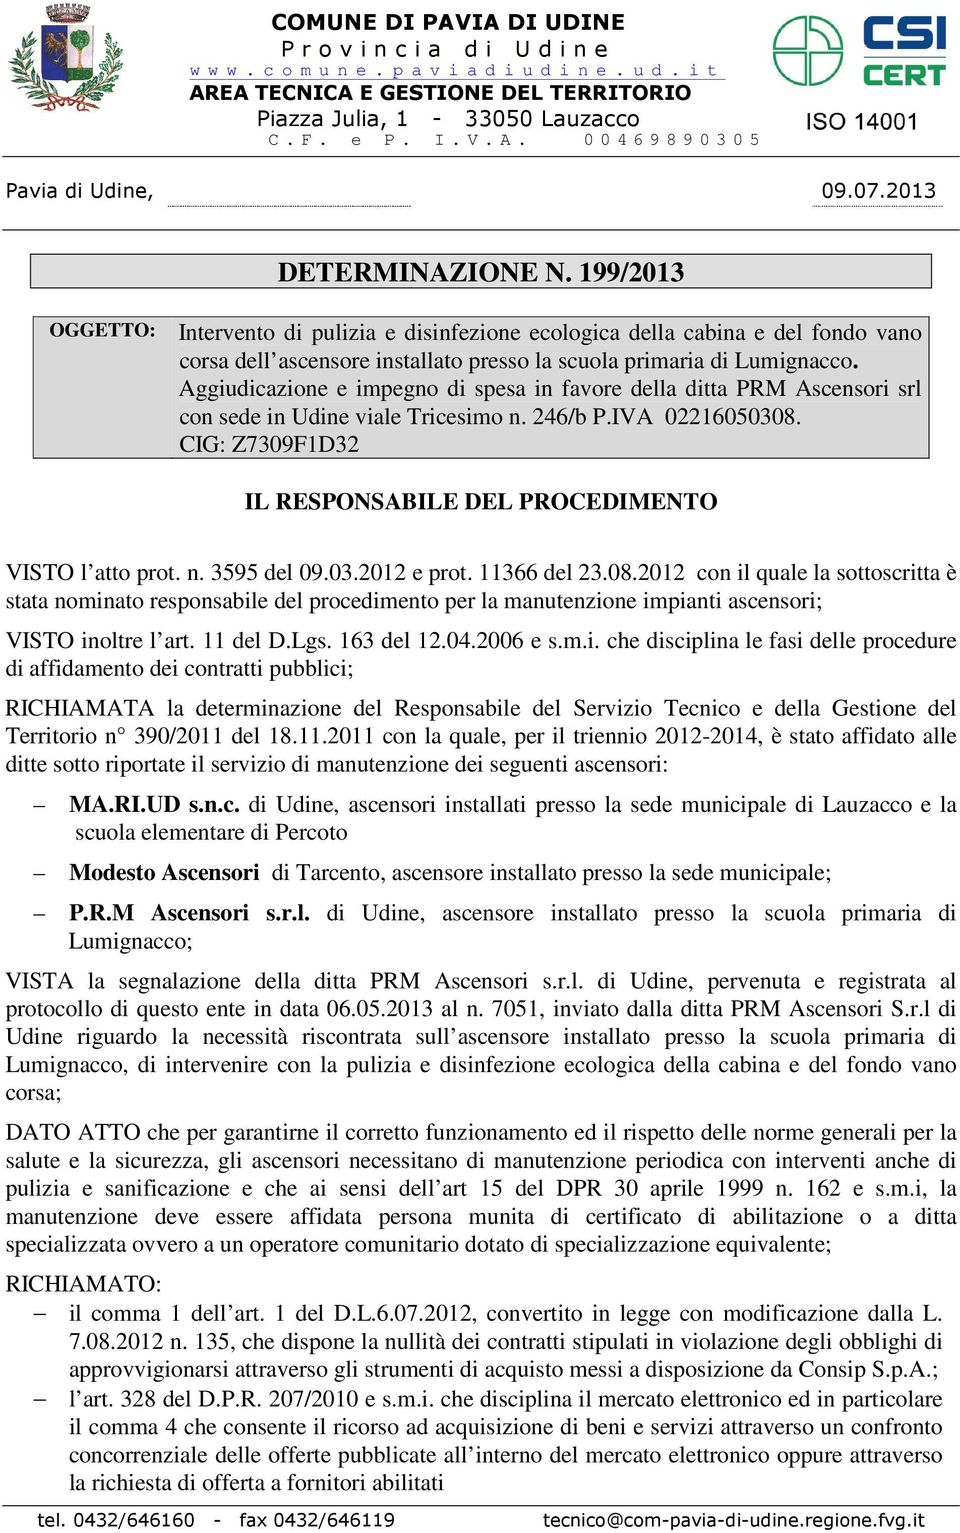 Aggiudicazione e impegno di spesa in favore della ditta PRM Ascensori srl con sede in Udine viale Tricesimo n. 246/b P.IVA 02216050308.